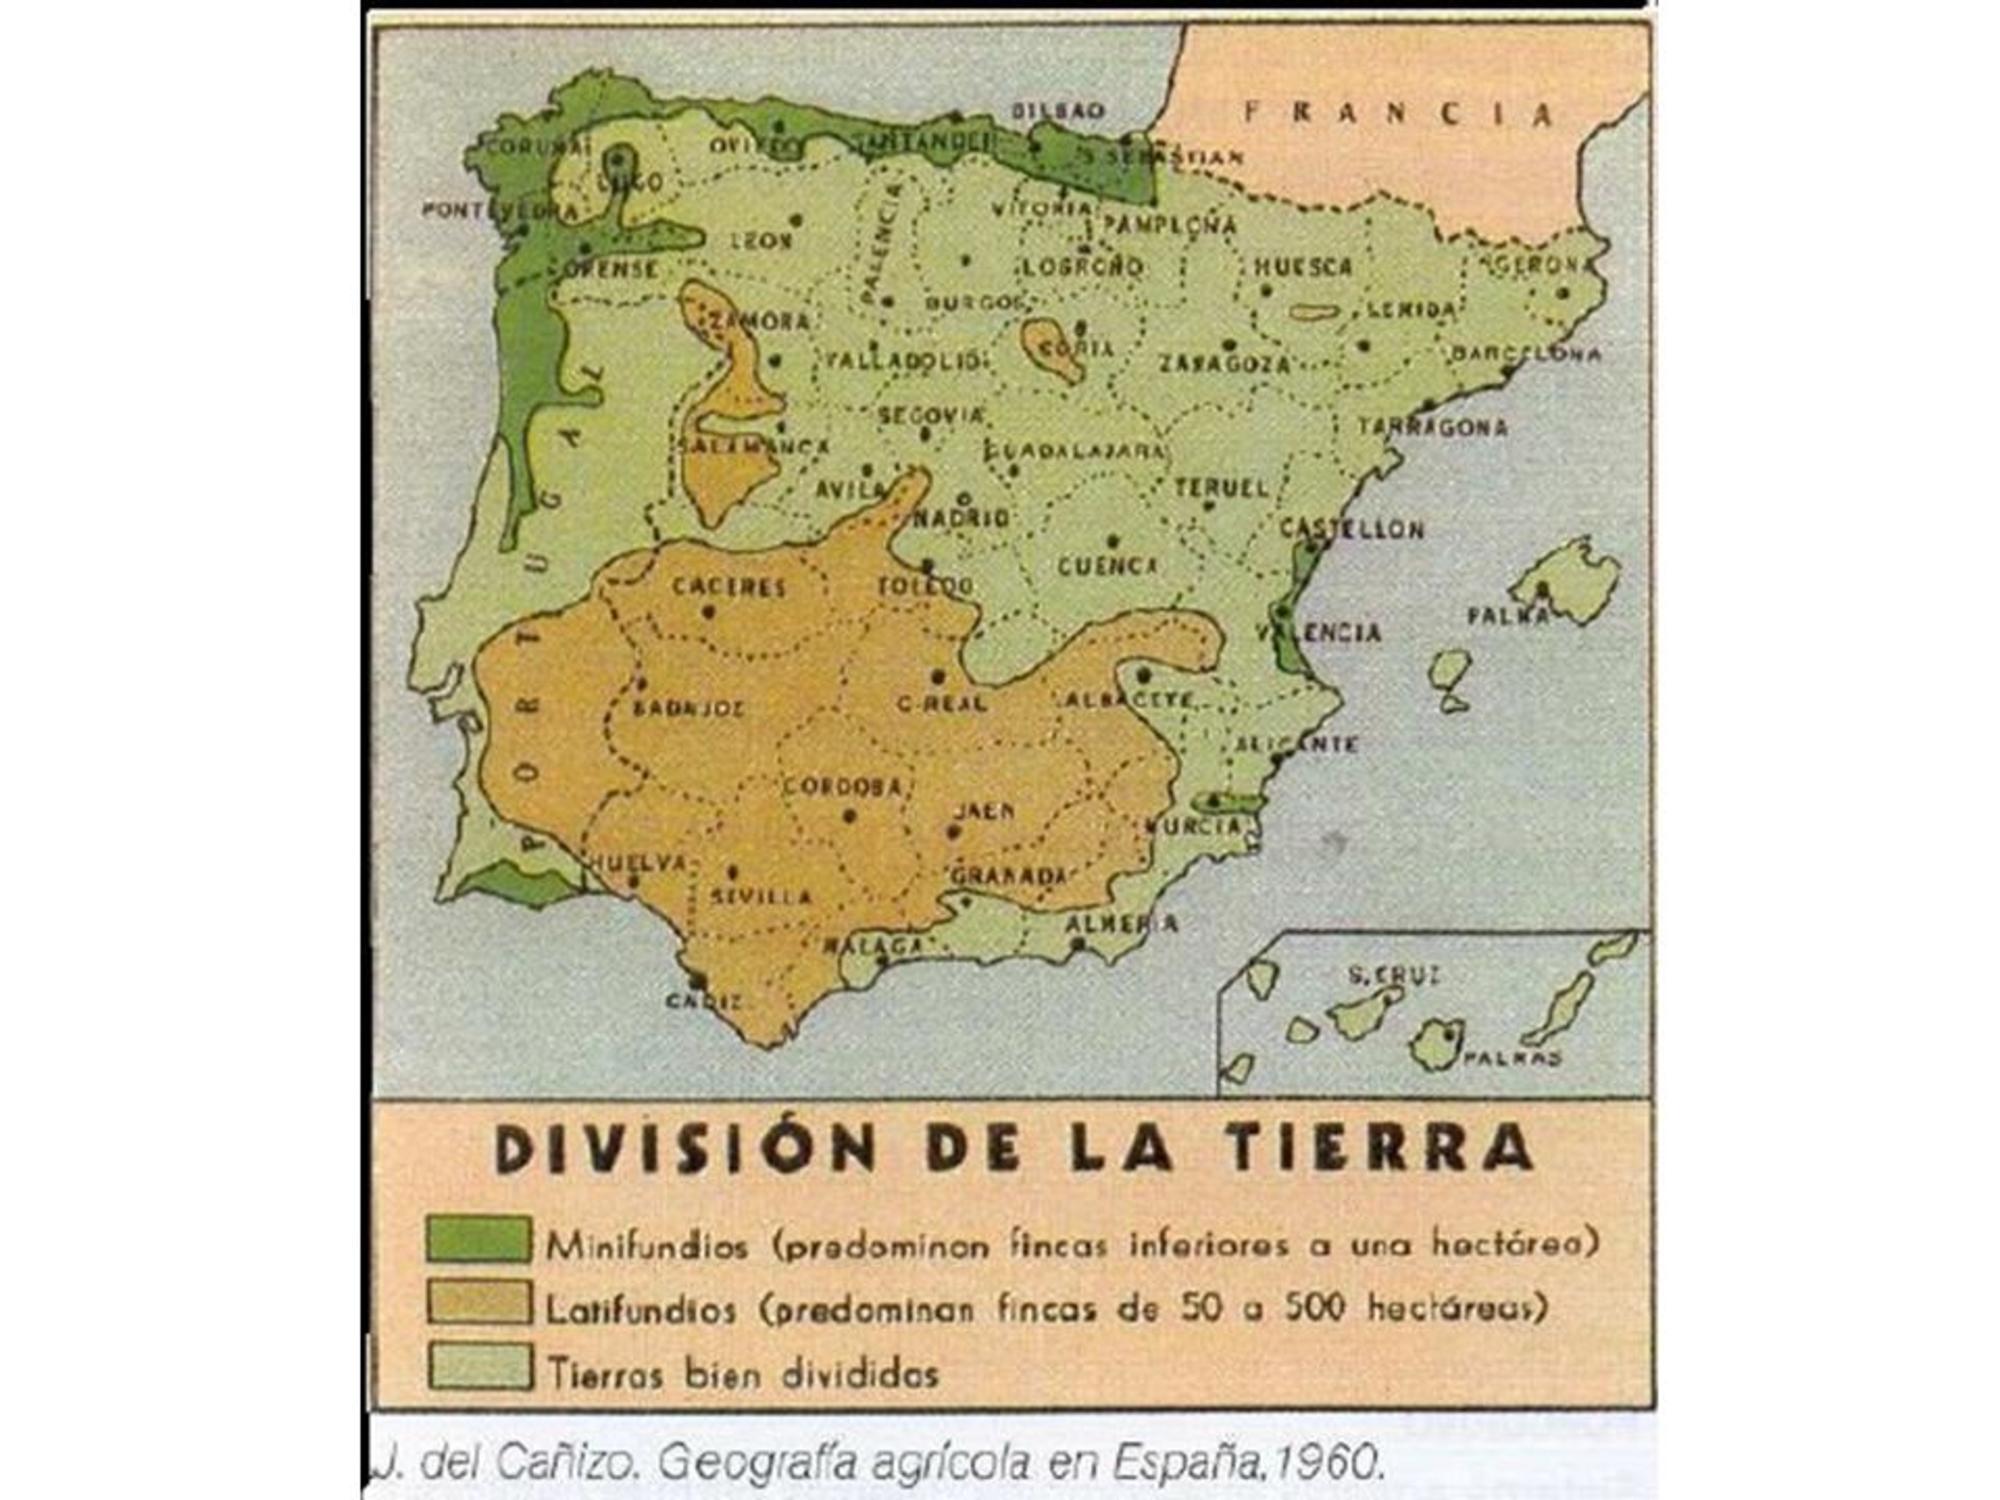 División de la Tierra. Mapa de los latifundios, minifundios y tierras bien divididas en España